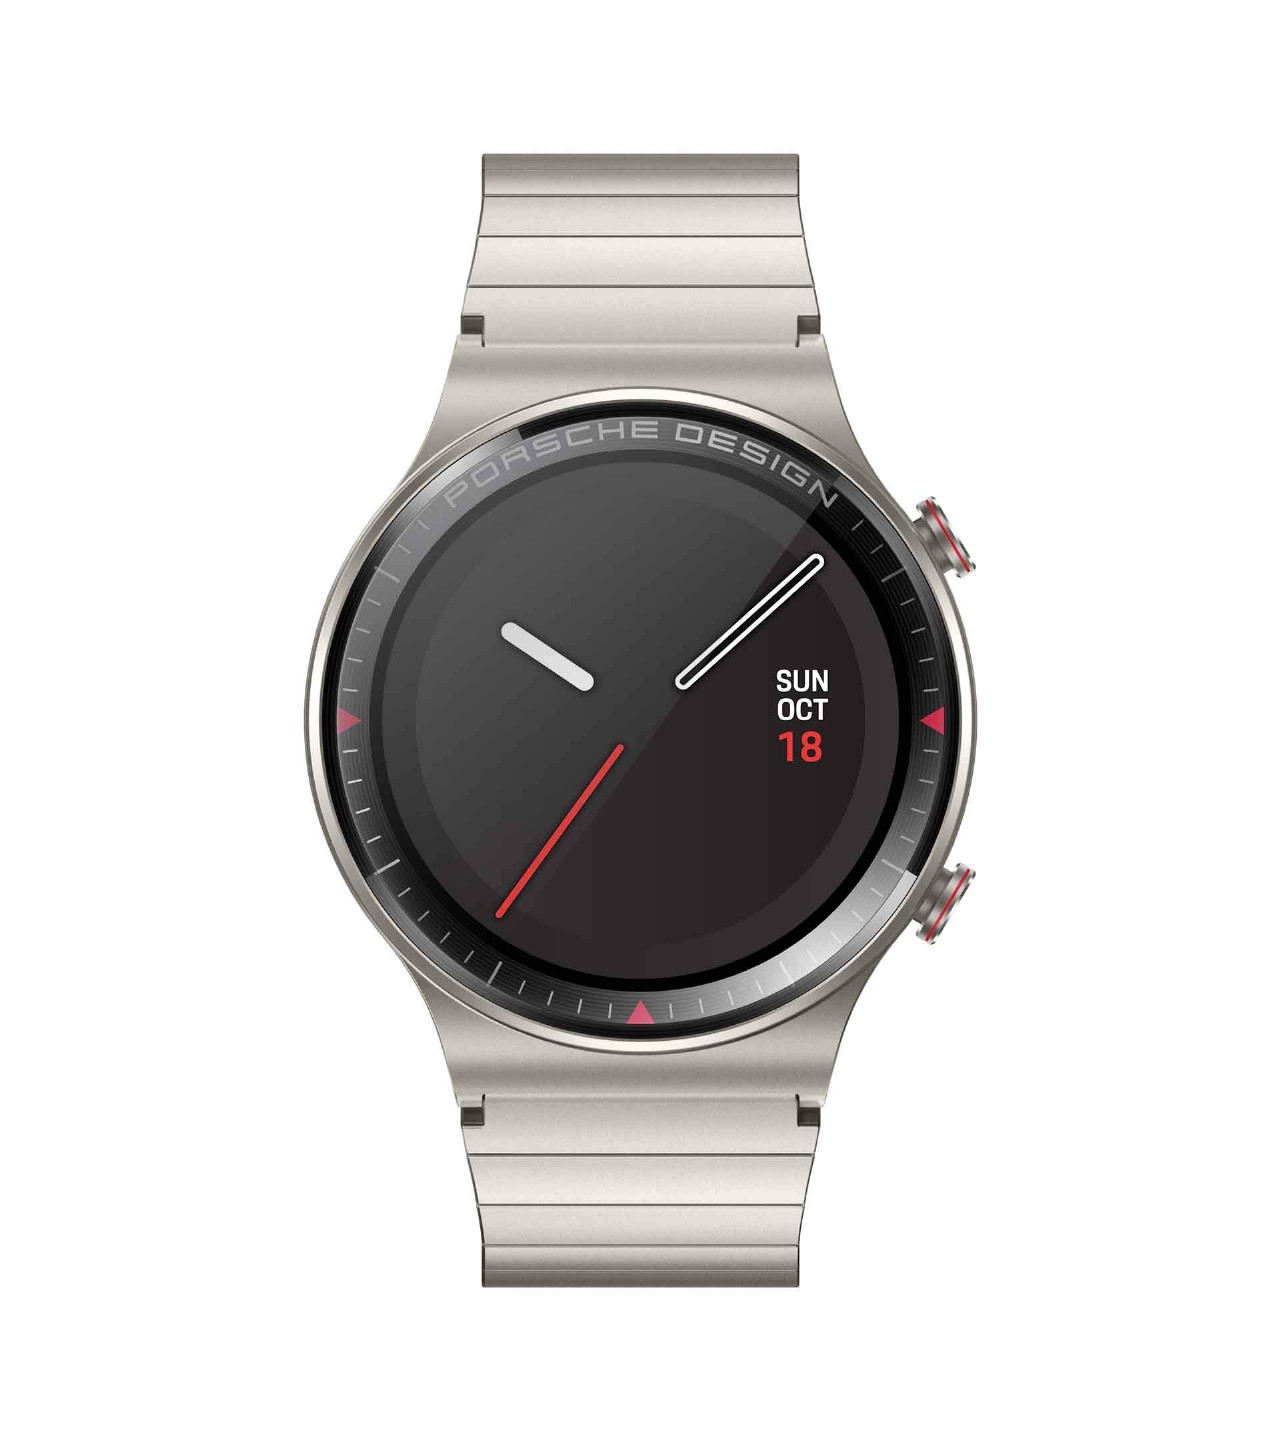 The Huawei Watch GT 2 Porsche Design has an estimated battery life